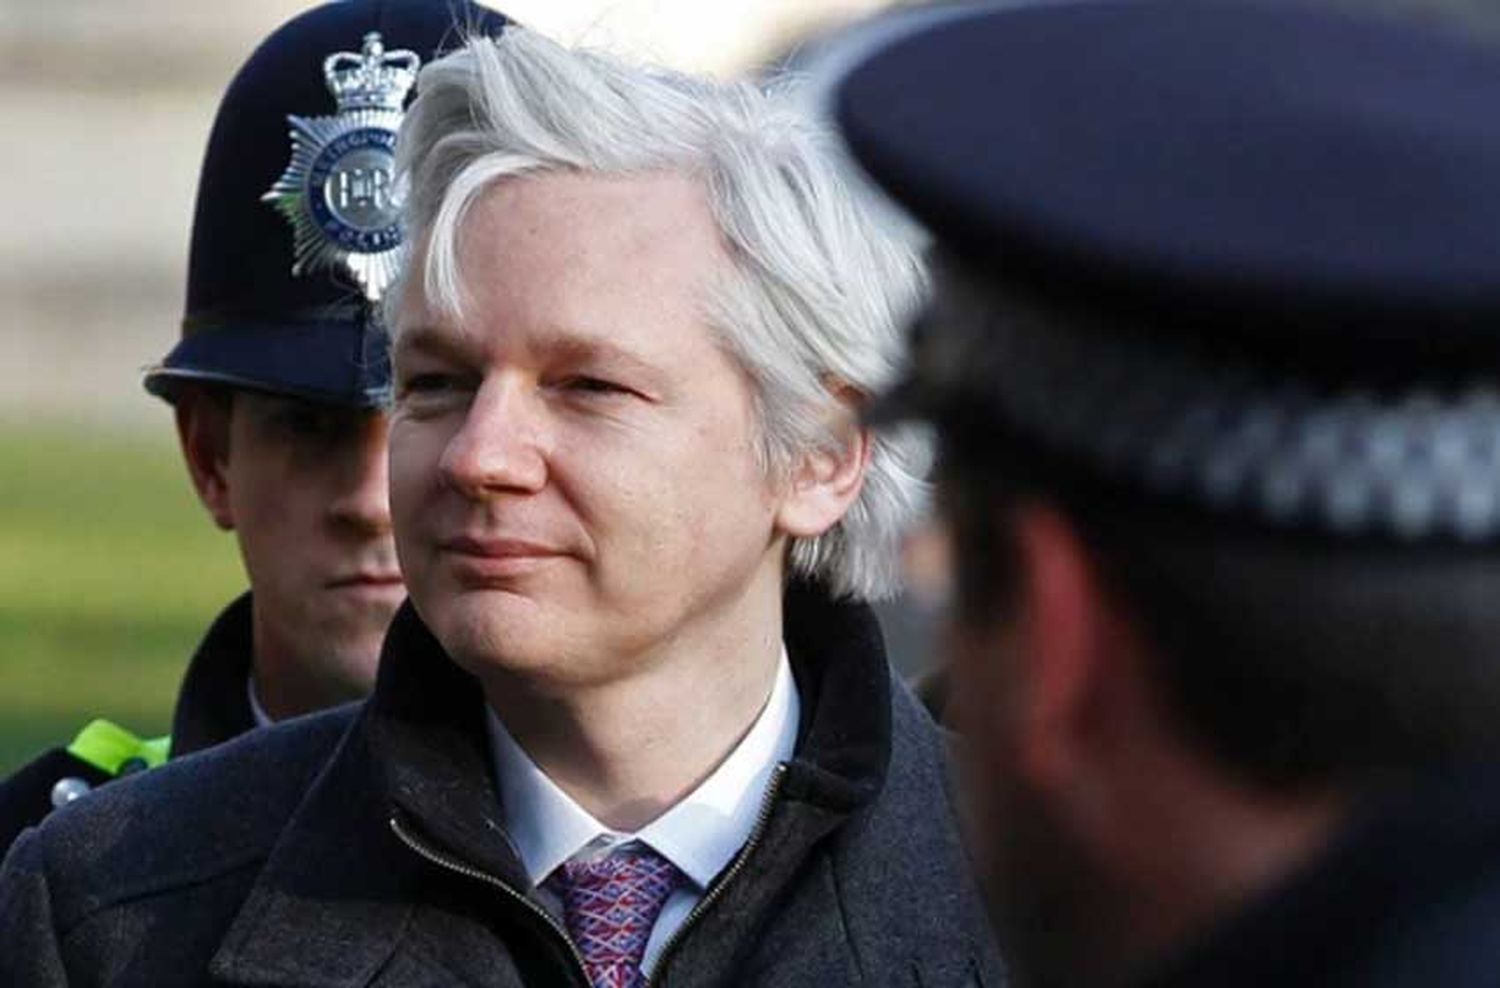 El gobierno de EEUU defiende la causa contra Assange: "Puso en peligro la seguridad nacional"